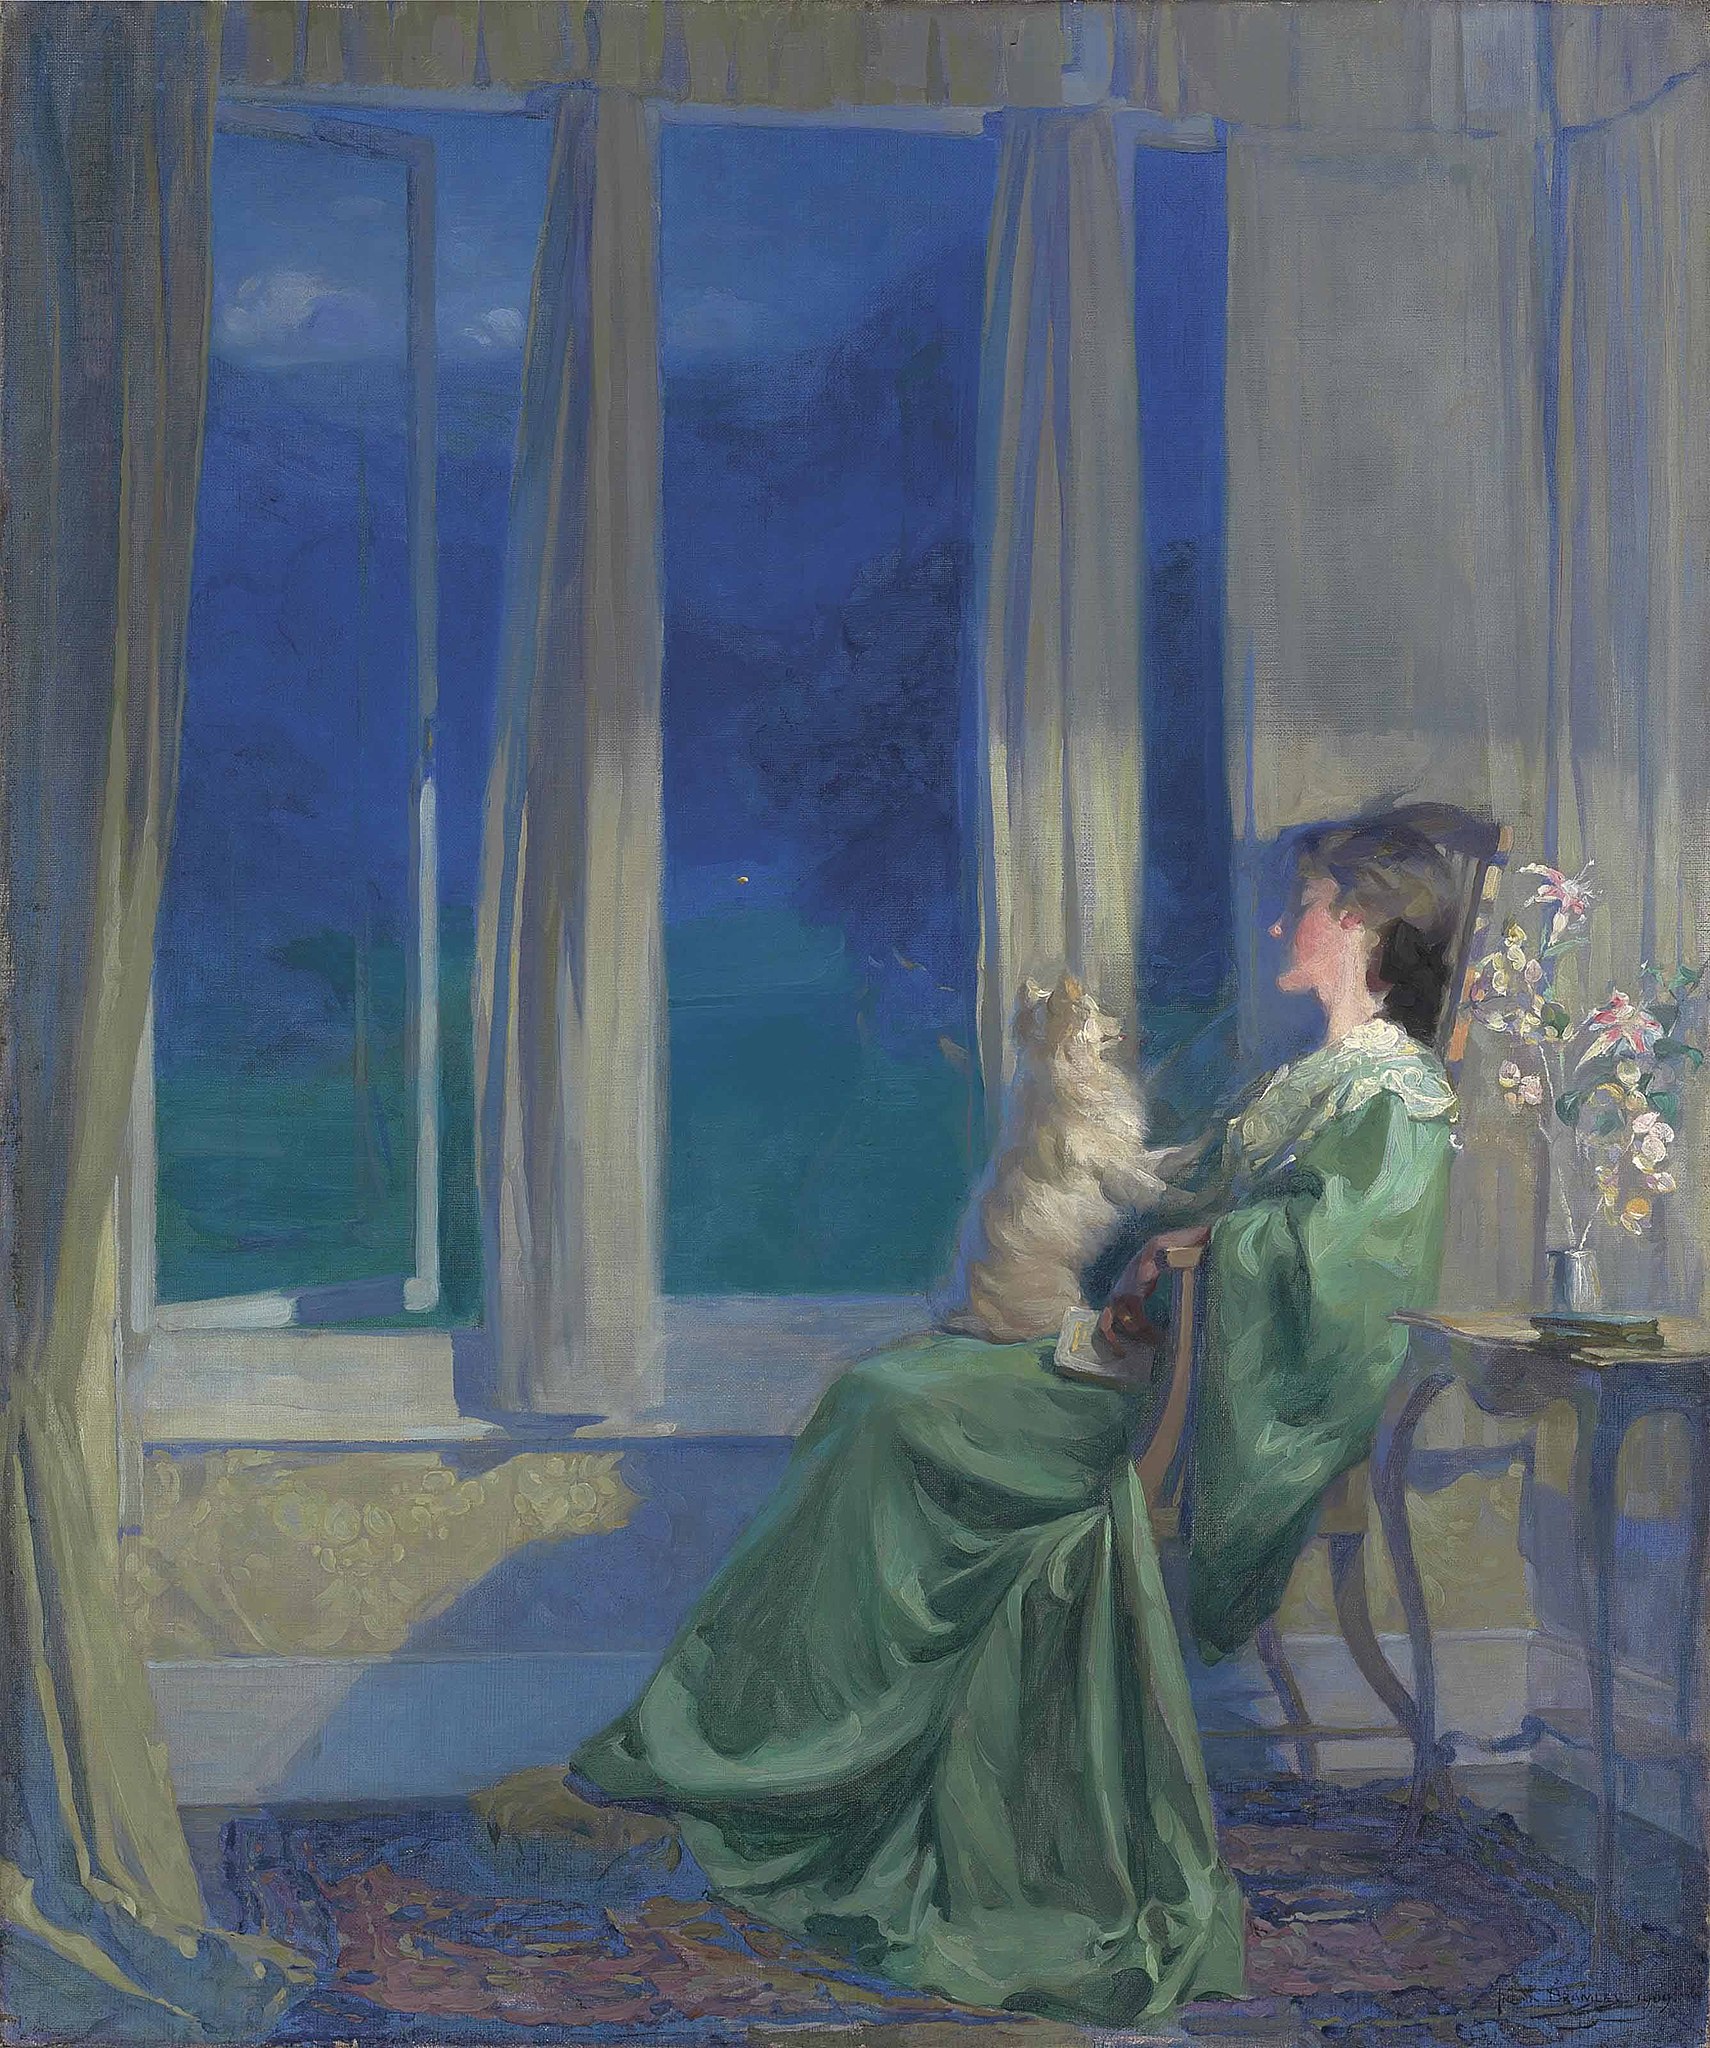 푸른 빛의 저녁이 천천히 내릴 때 by Frank Bramley - 1909년 - 90.8 x 76.8 cm 